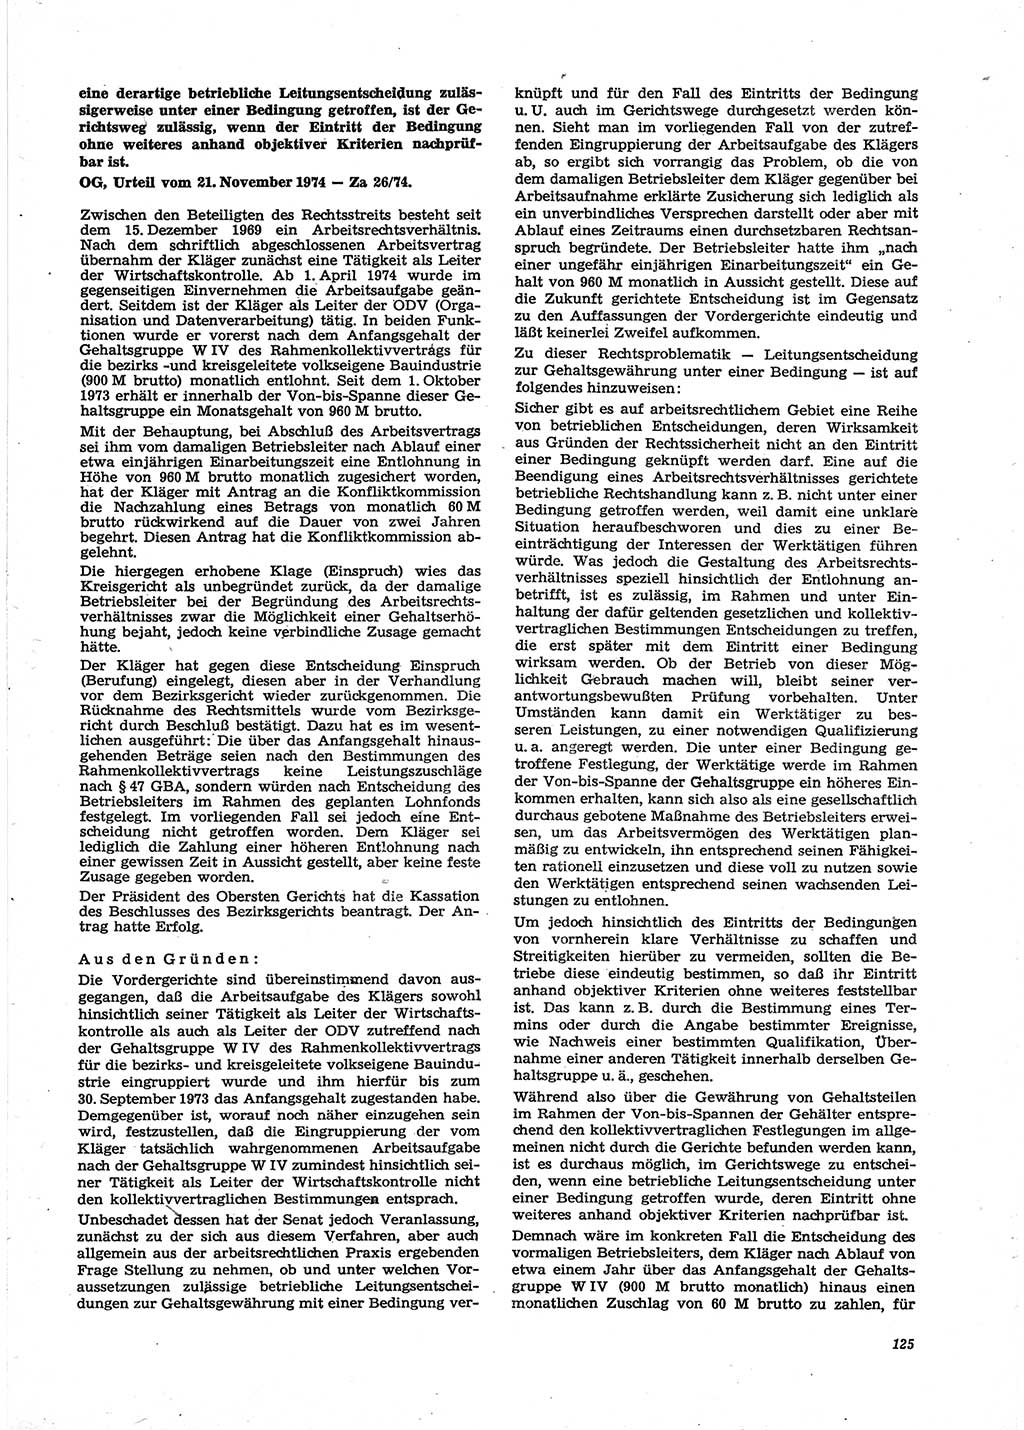 Neue Justiz (NJ), Zeitschrift für Recht und Rechtswissenschaft [Deutsche Demokratische Republik (DDR)], 29. Jahrgang 1975, Seite 125 (NJ DDR 1975, S. 125)